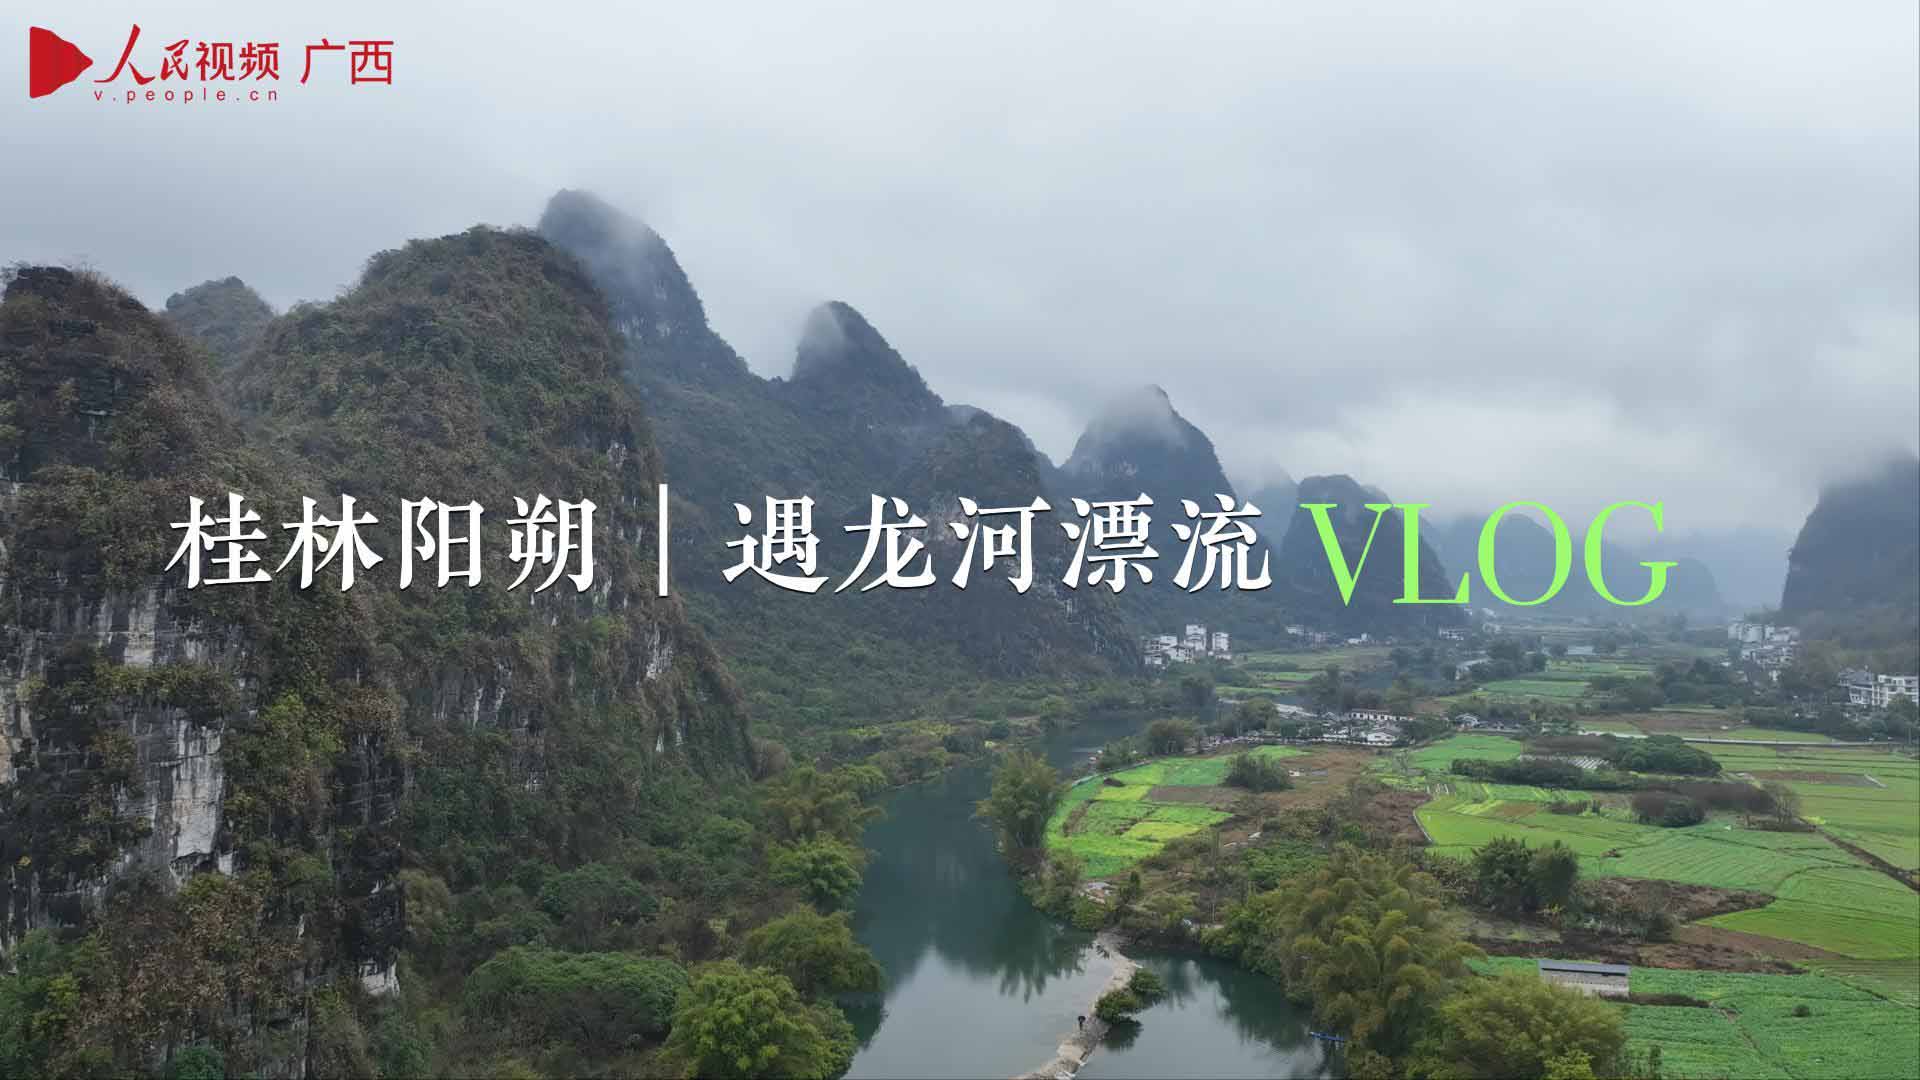 Vlog︱在遇龍河“山水畫卷”裡漂流-封面